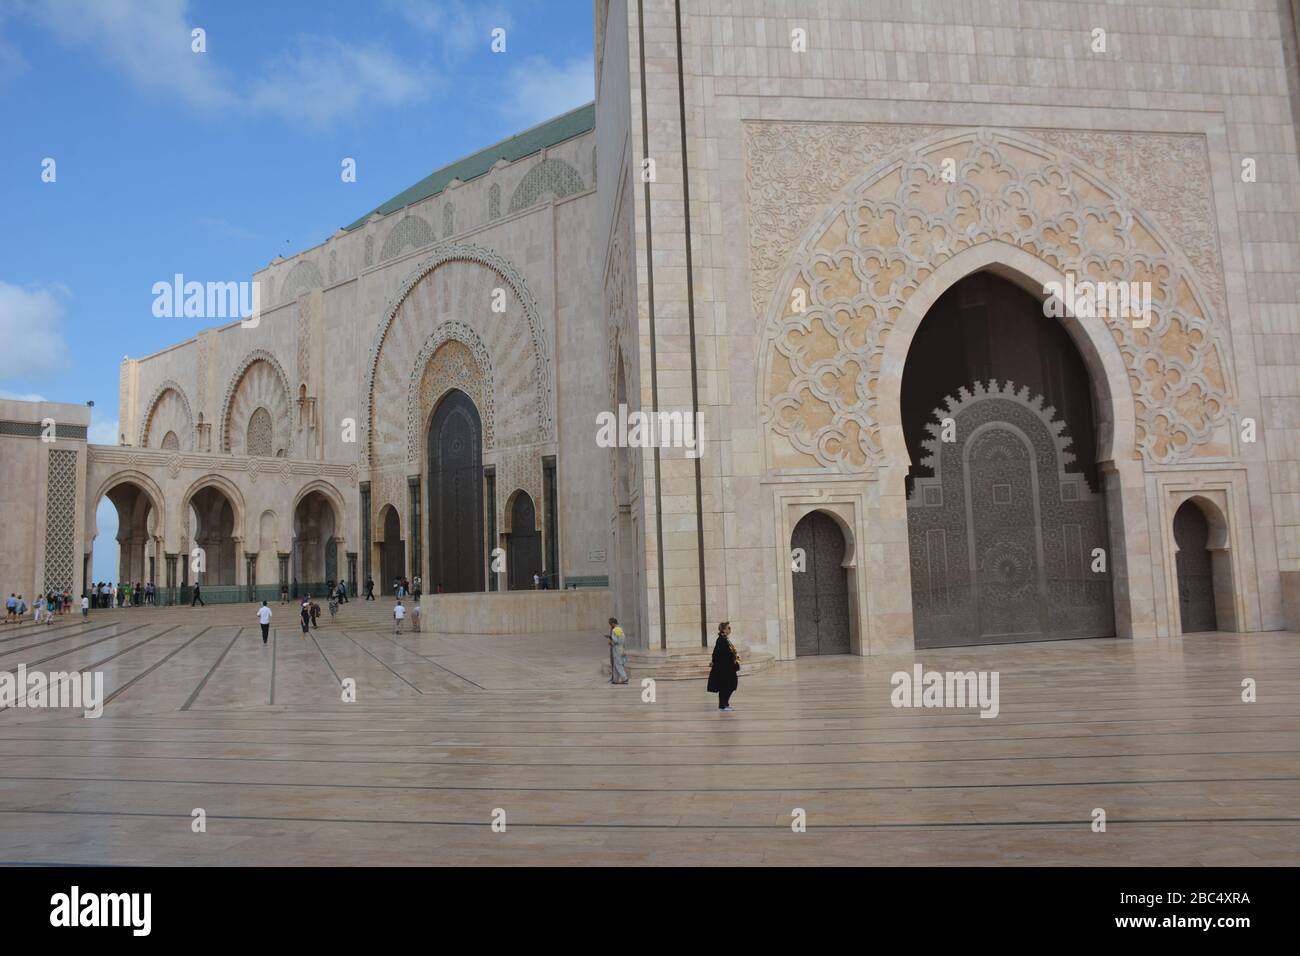 Espectacular foto exterior de la Mezquita Hassan II, Casablanca, Marruecos, mostrando el enorme tamaño del edificio en comparación con la gente. Foto de stock